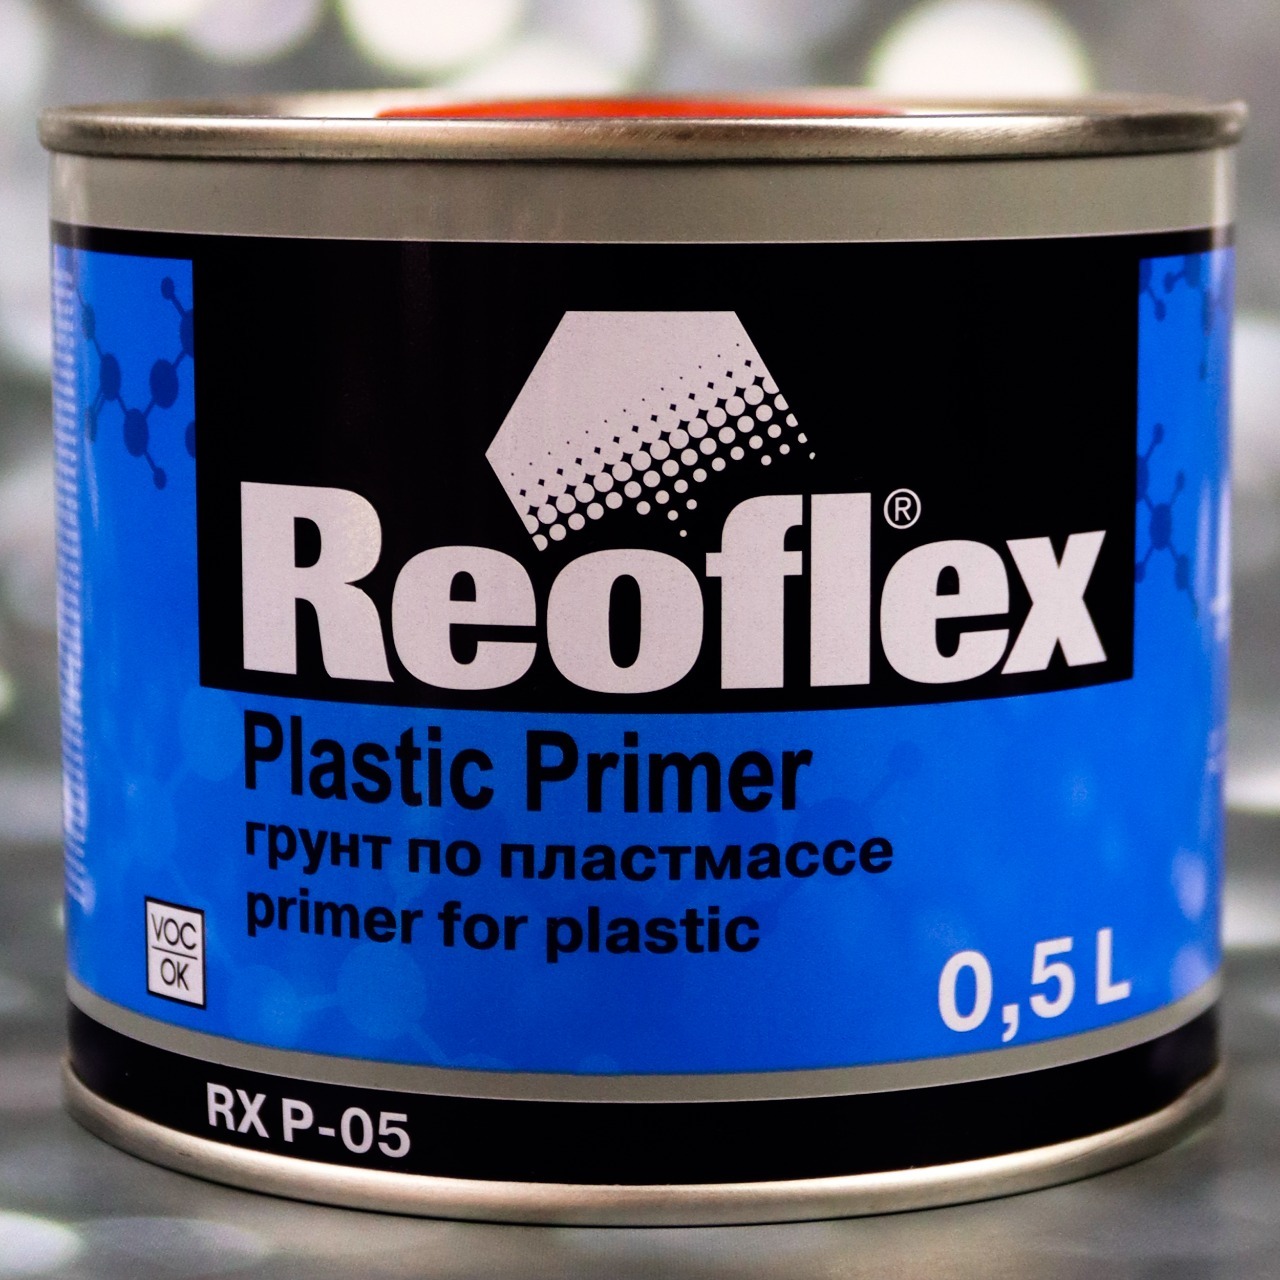 Праймер по пластику. Reoflex Plastic primer. Reoflex грунт по пластмассе. Reoflex RX P-05. Грунт по пластику Reoflex RX P-05 серый.